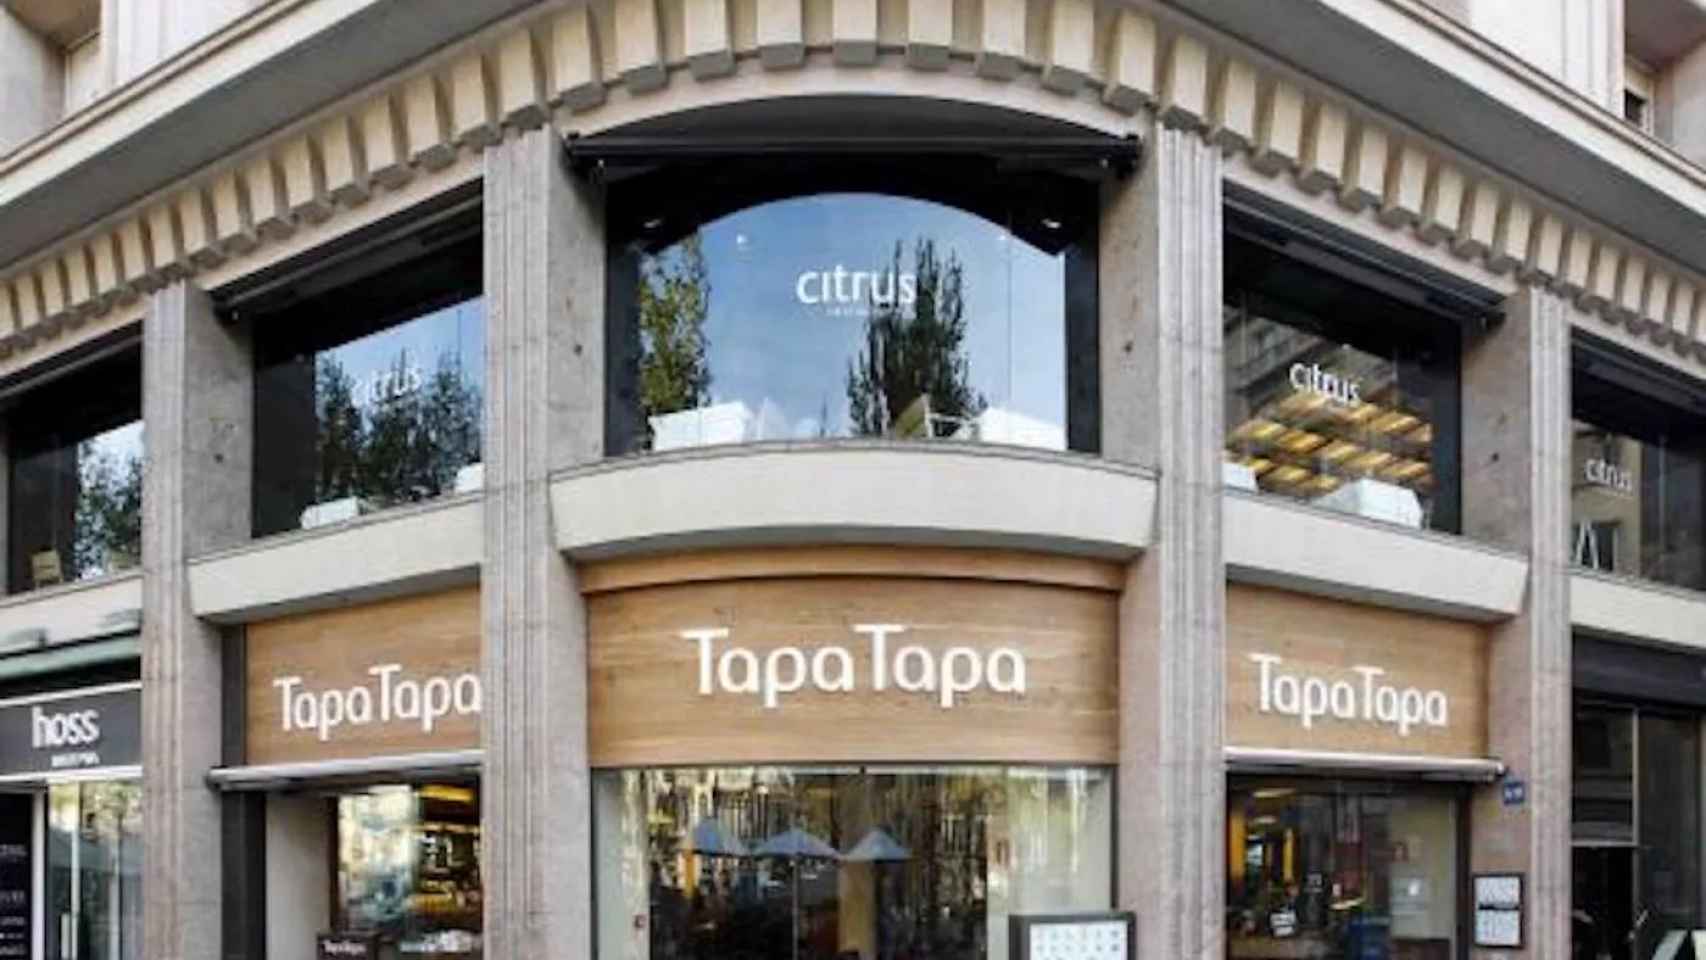 Uno de los restaurantes Tapa Tapa de Barcelona